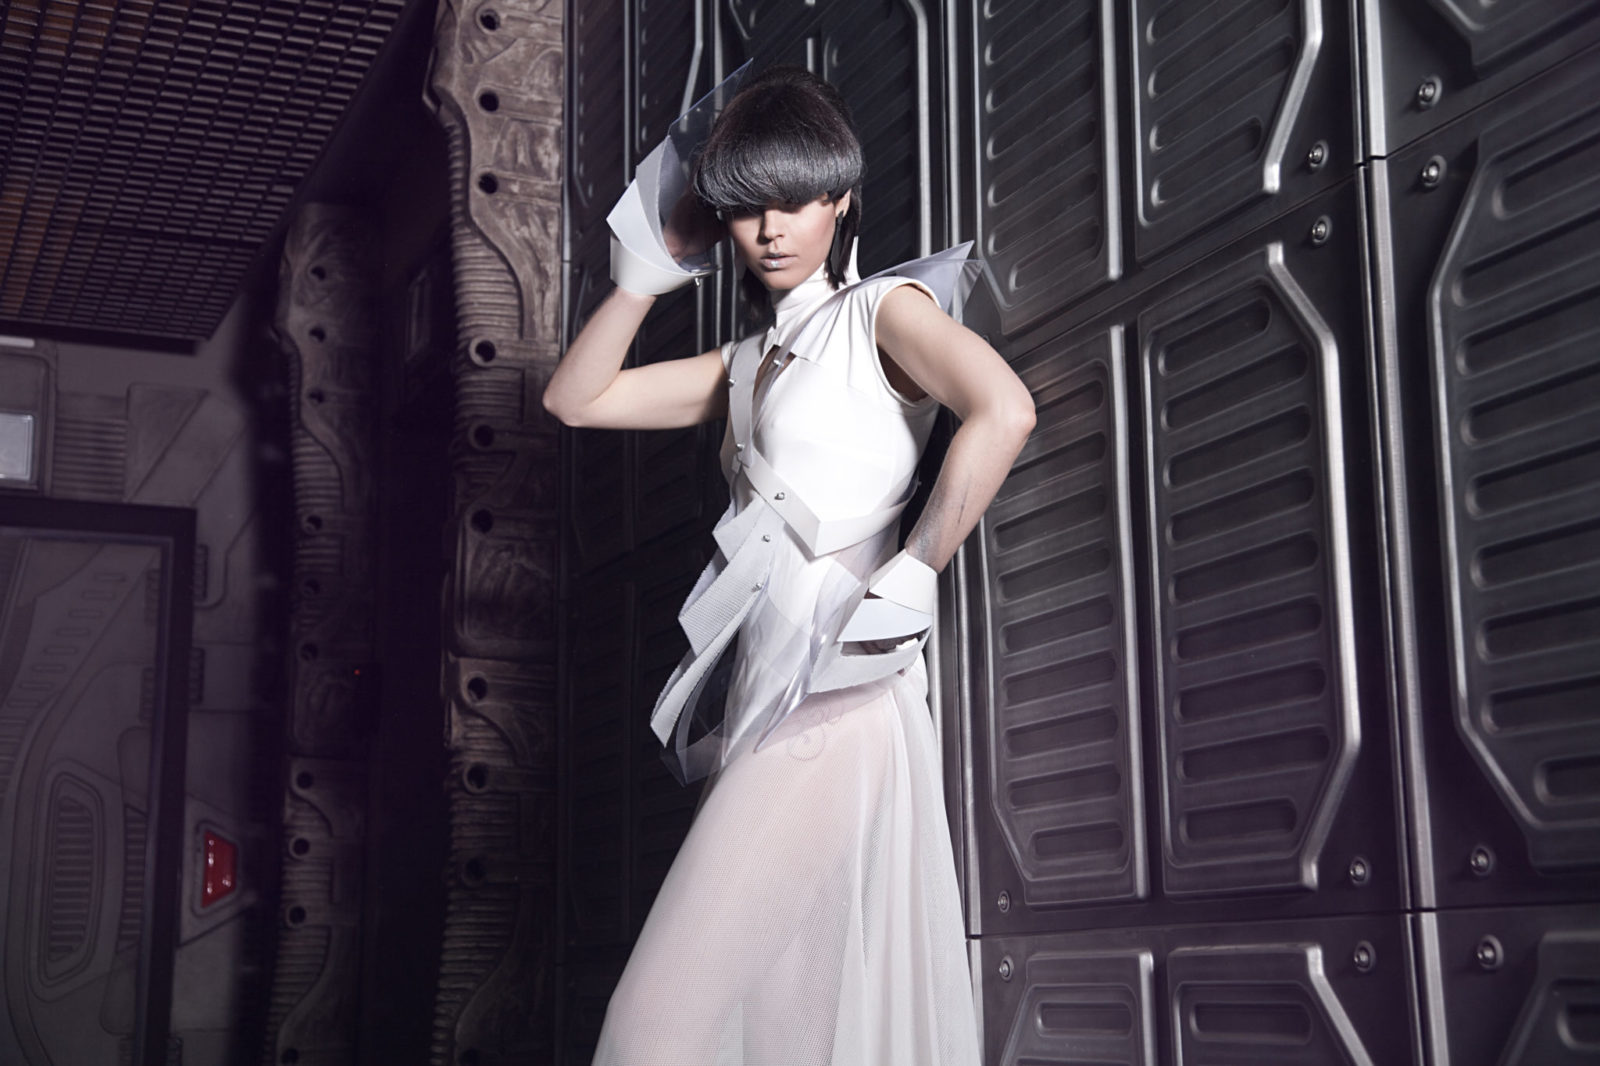 Kobieta ubrana w białą sukienkę z futurystycznymi elementami z fryzurą zakrywającą oczy